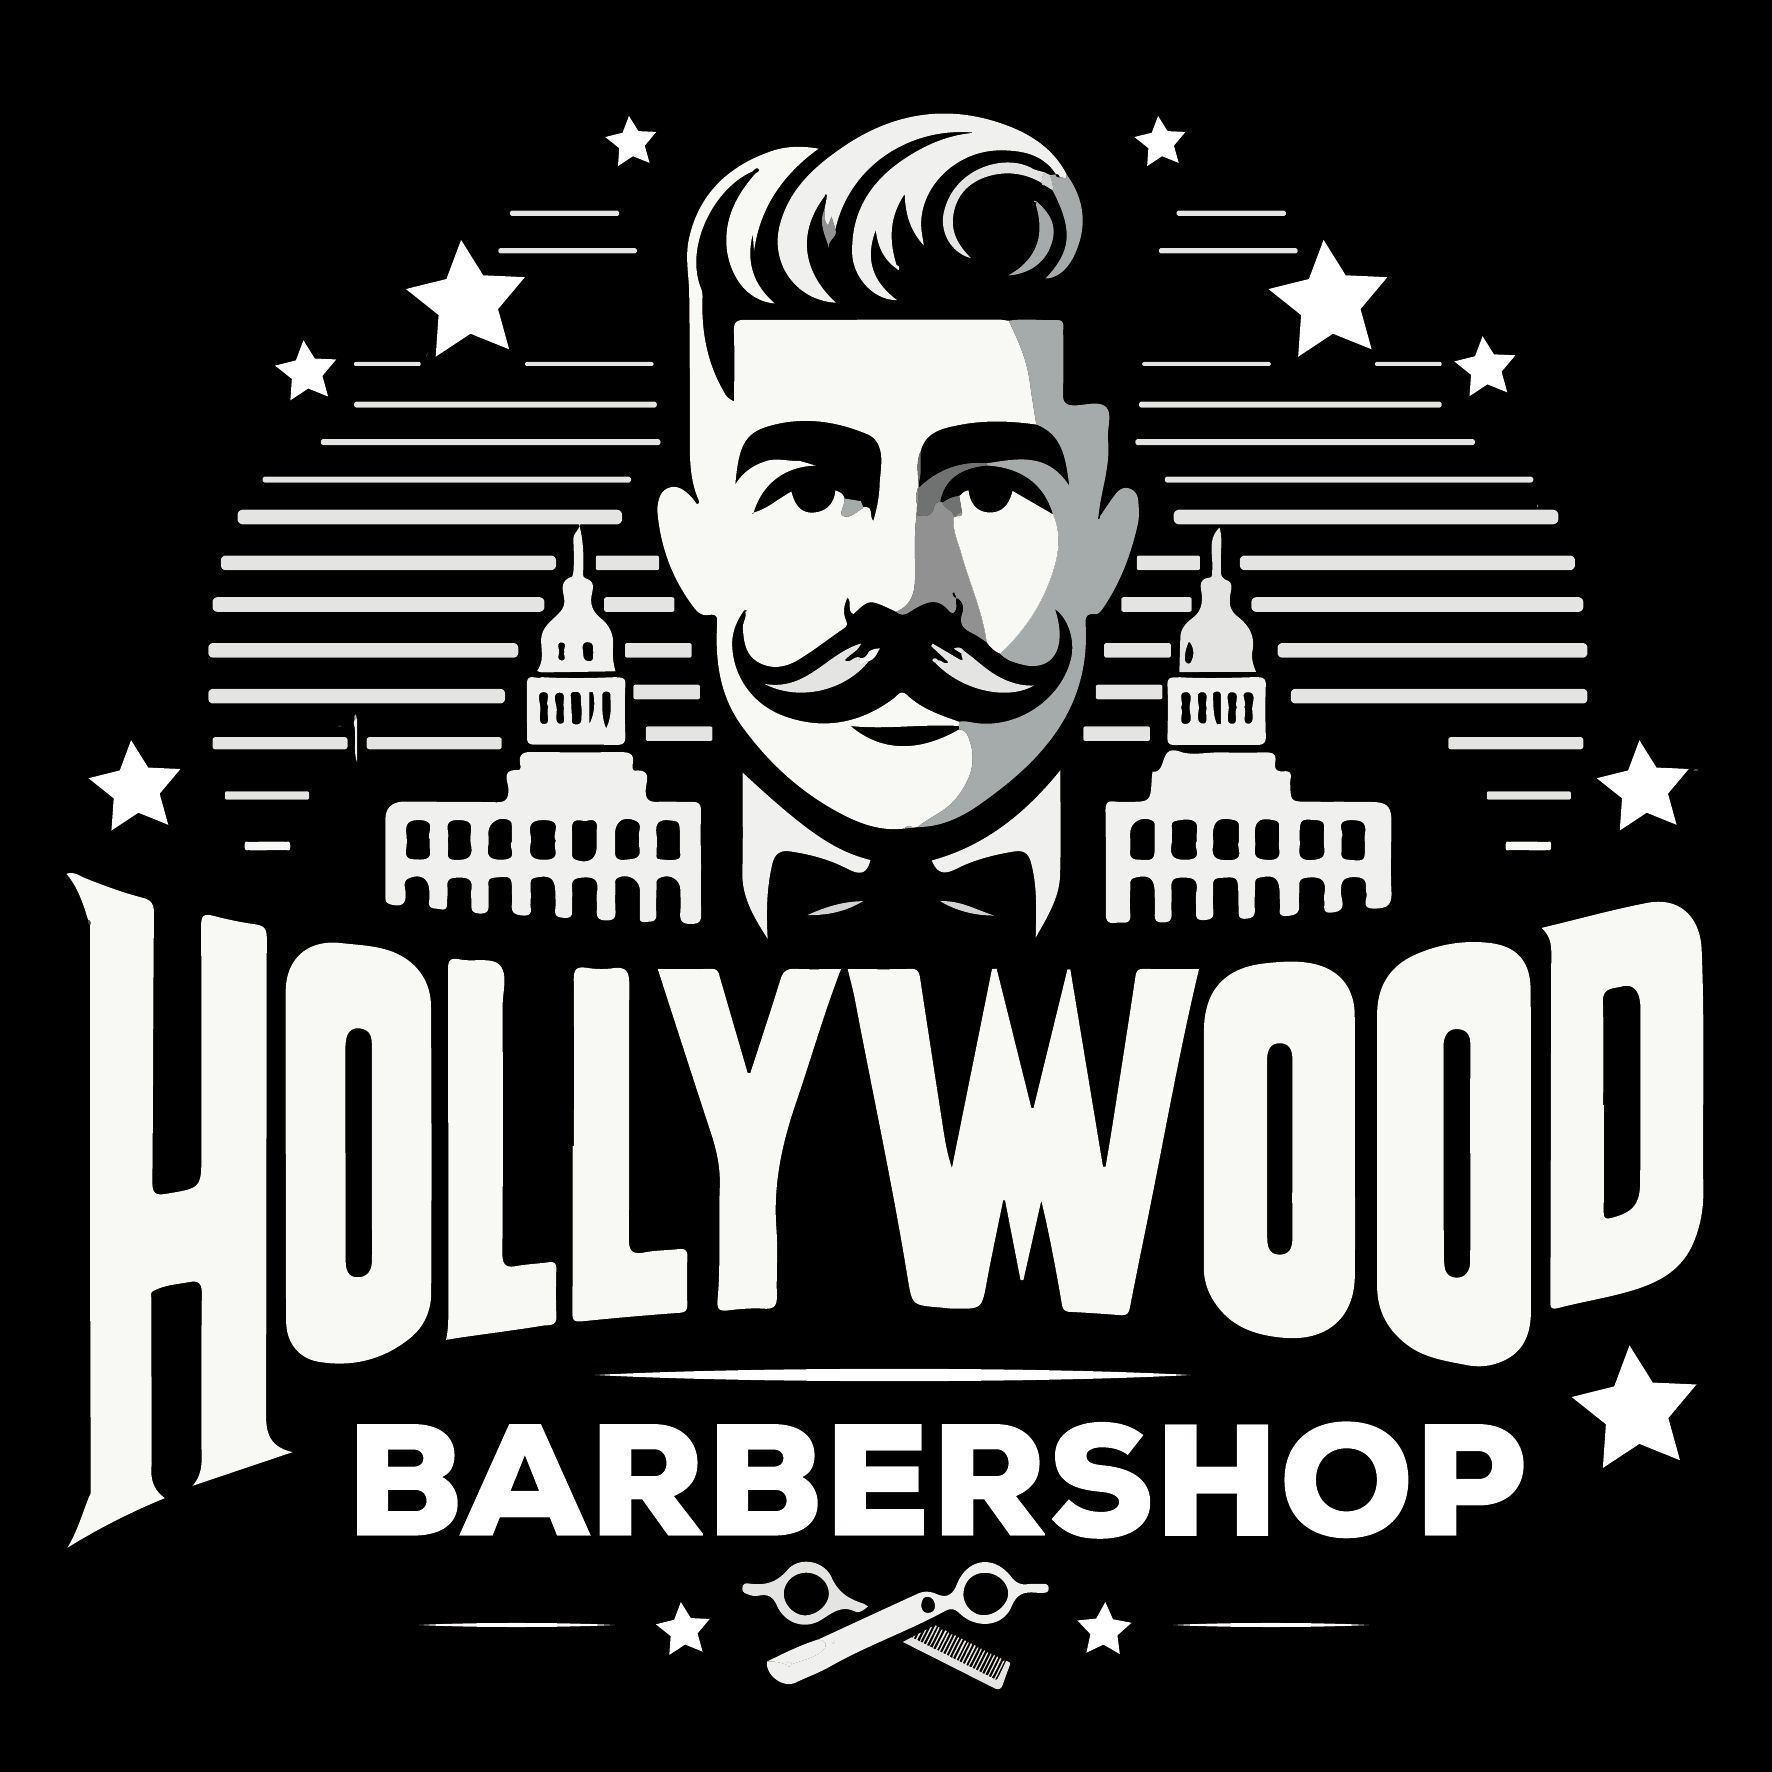 Hollywood Barbershop Profil Testowy, ul. kard. Wyszyńskiego 1, 28-340, Sędziszów